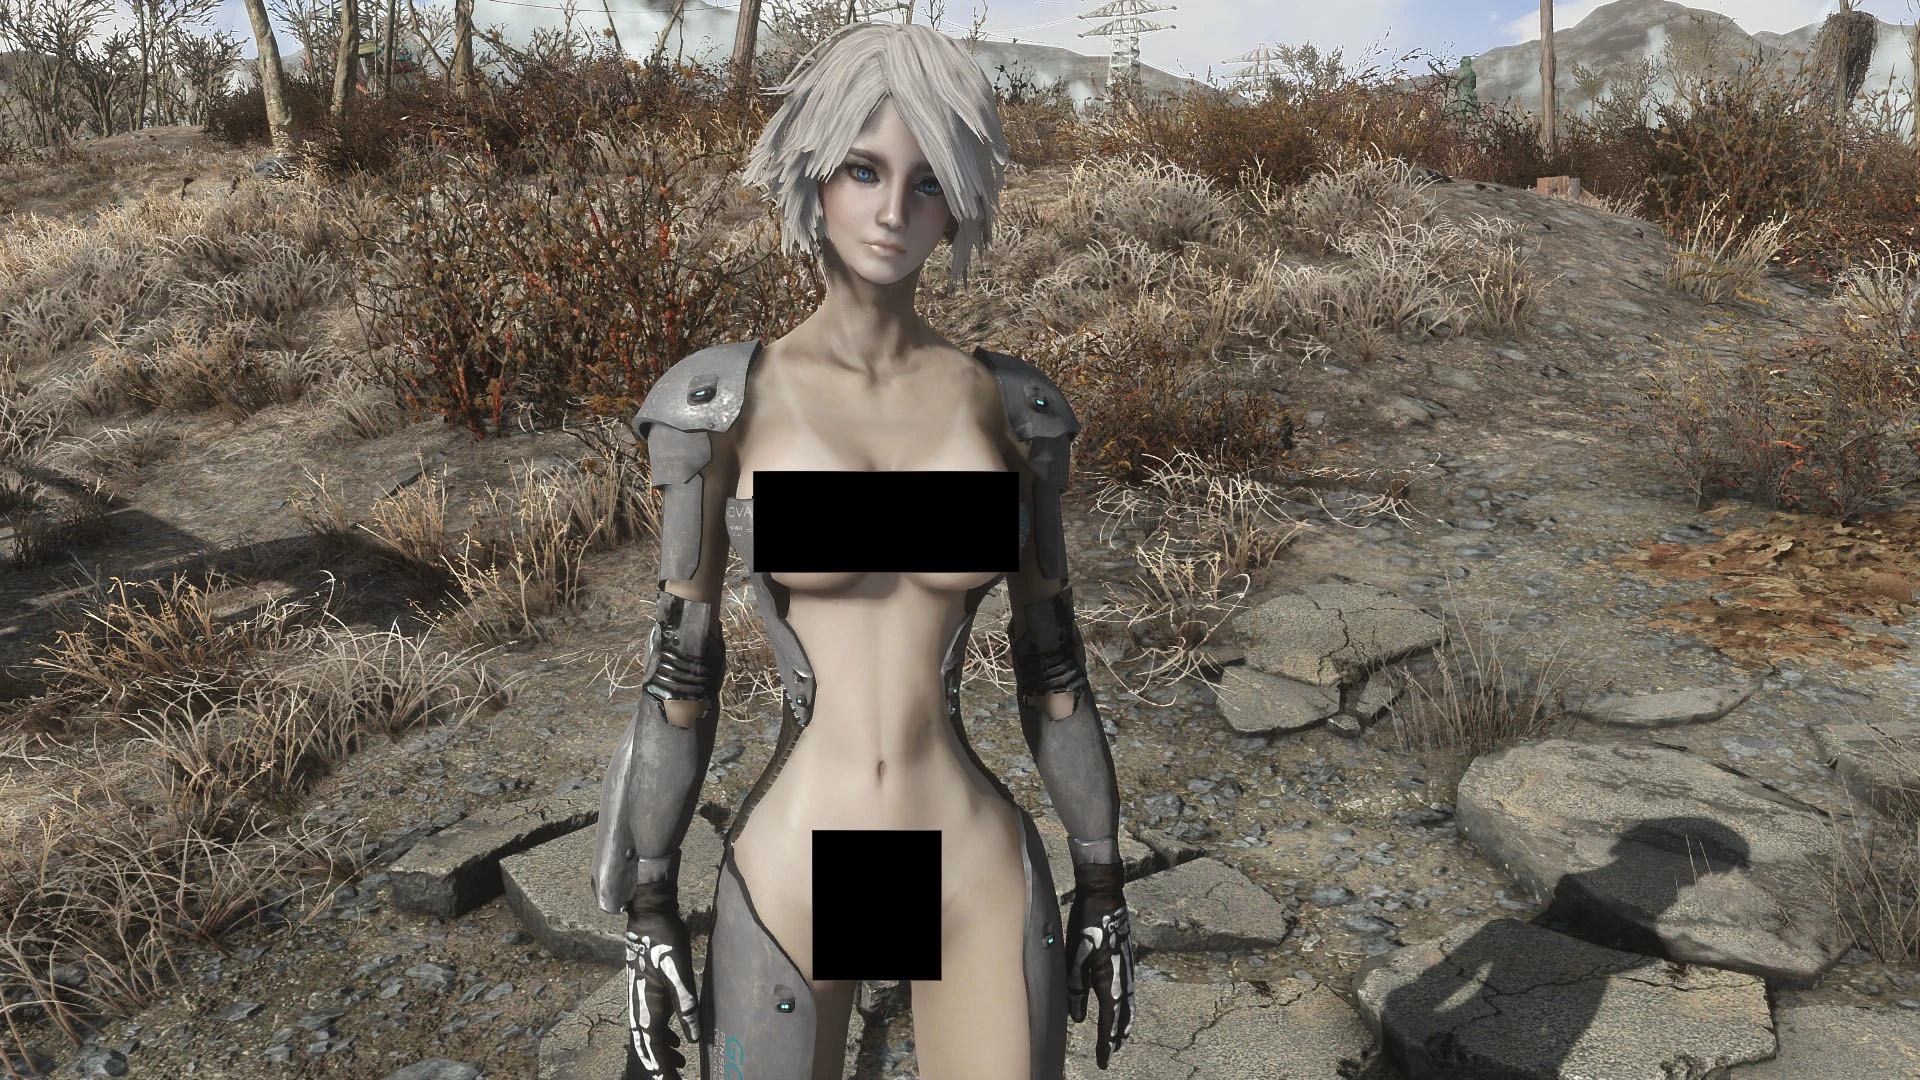 Synthetic girl CBBE body preset 1 at Fallout 4 Nexus.